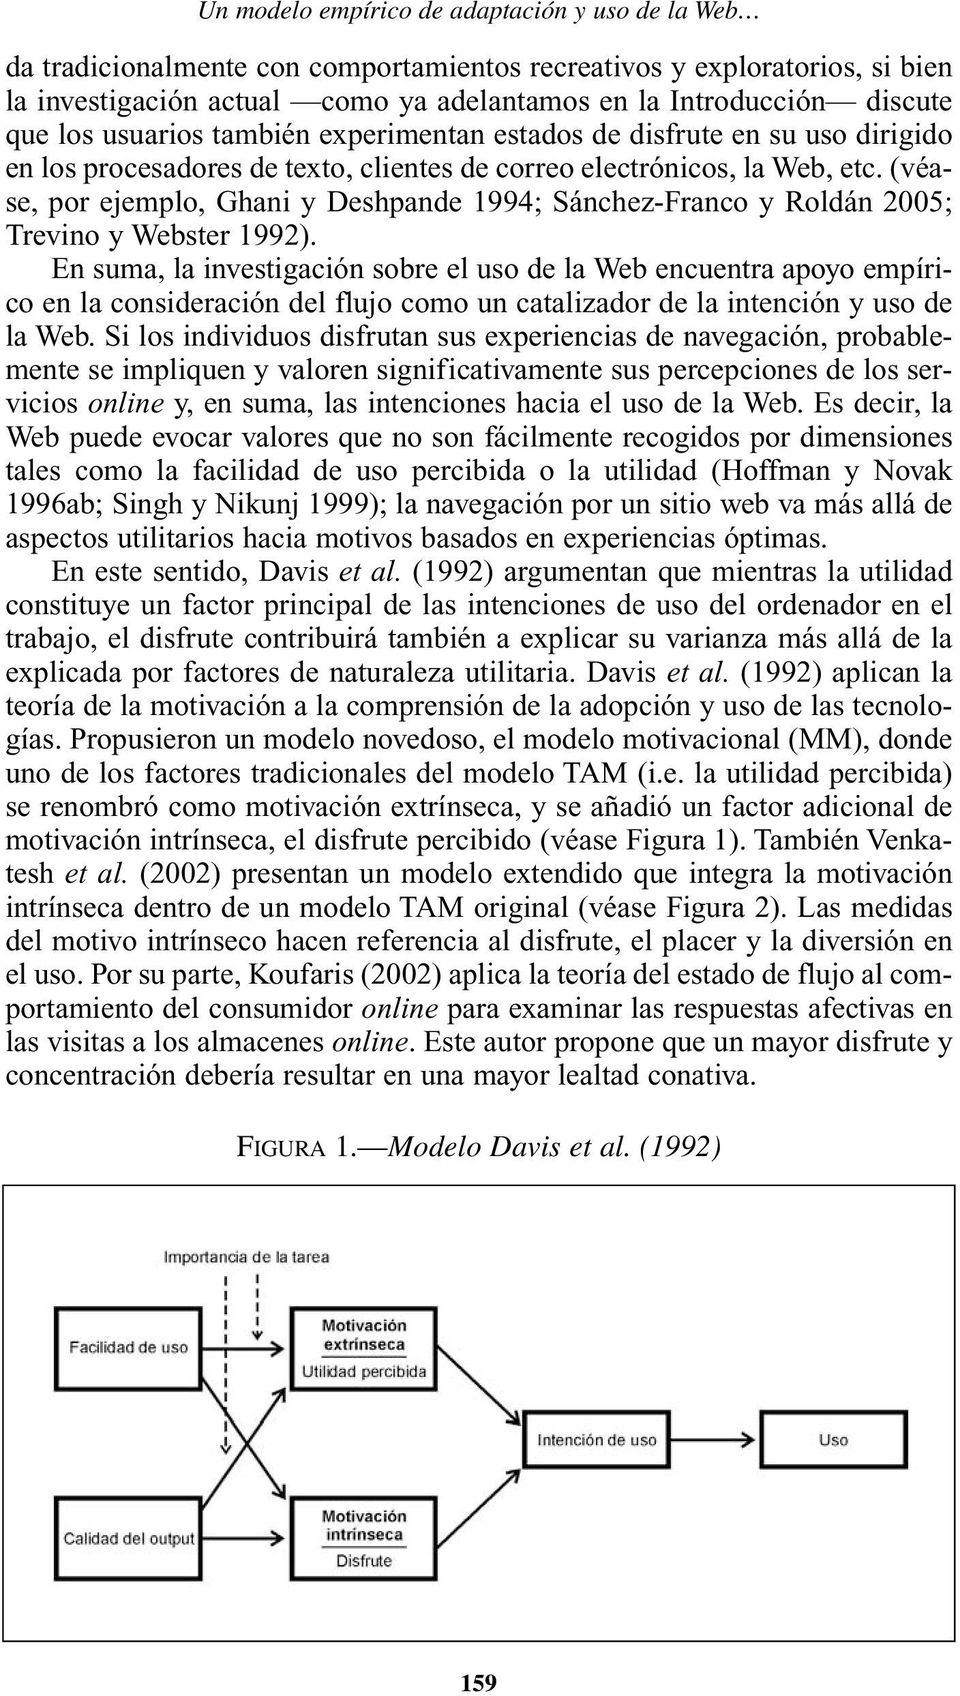 (véase, por ejemplo, Ghani y Deshpande 1994; Sánchez-Franco y Roldán 2005; Trevino y Webster 1992).